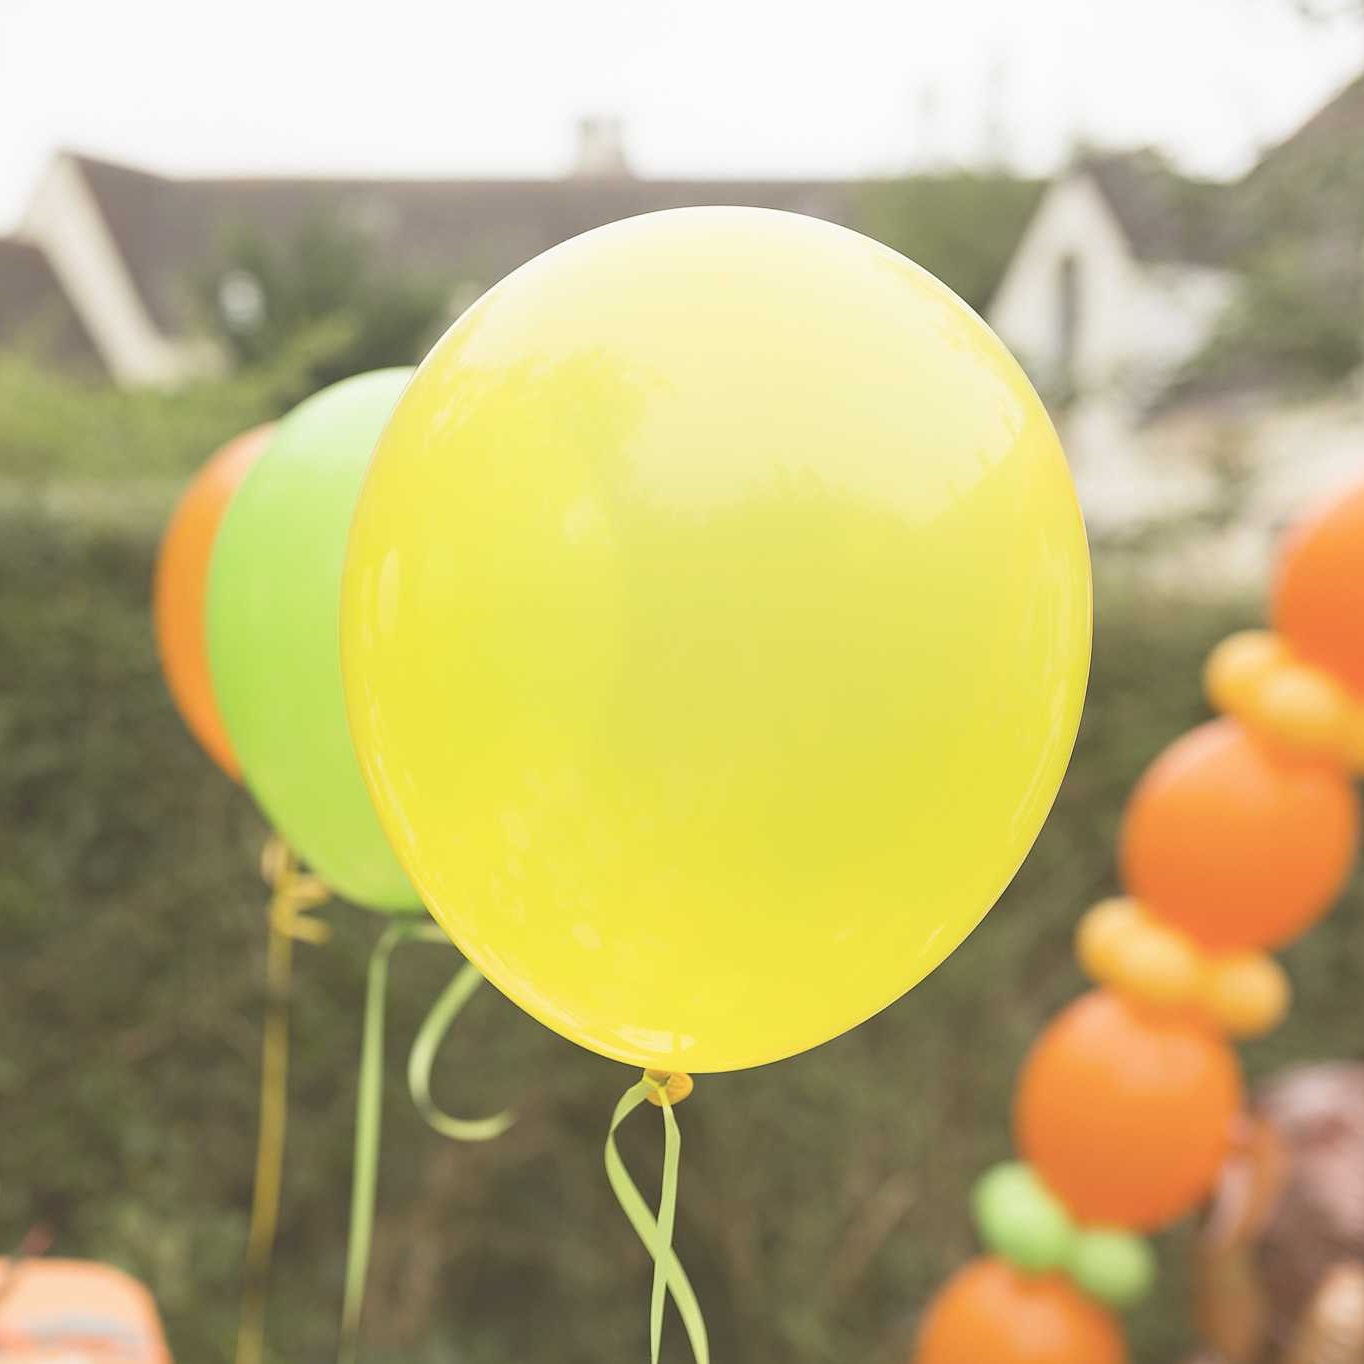 Ballon hélium papillon - Décoration d'anniversaire fille